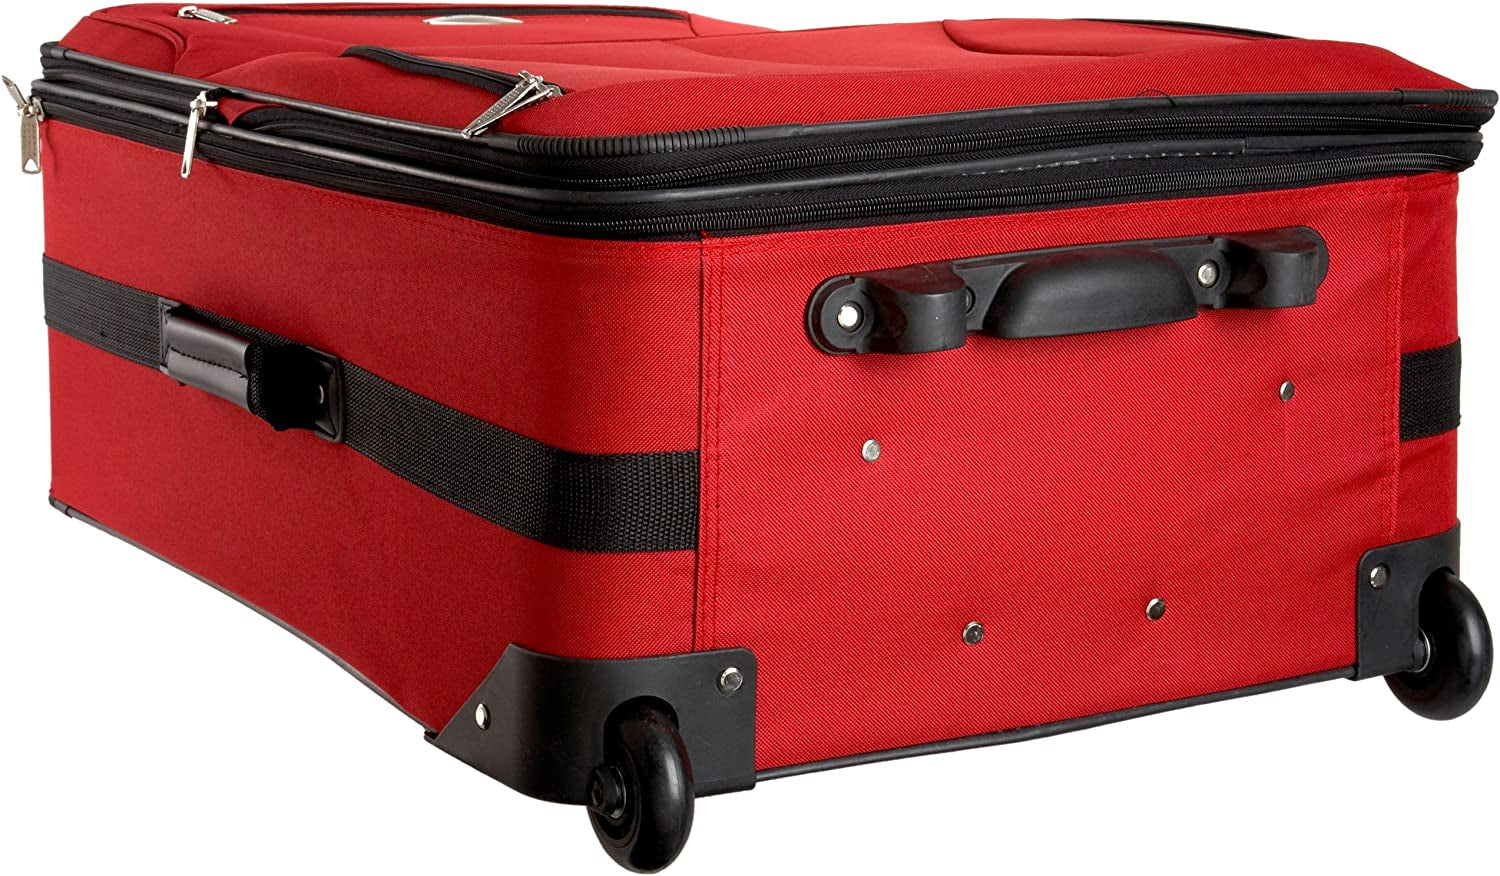 Rockland  4-Piece Journey Softside Upright Luggage Set (14/19/24/28)